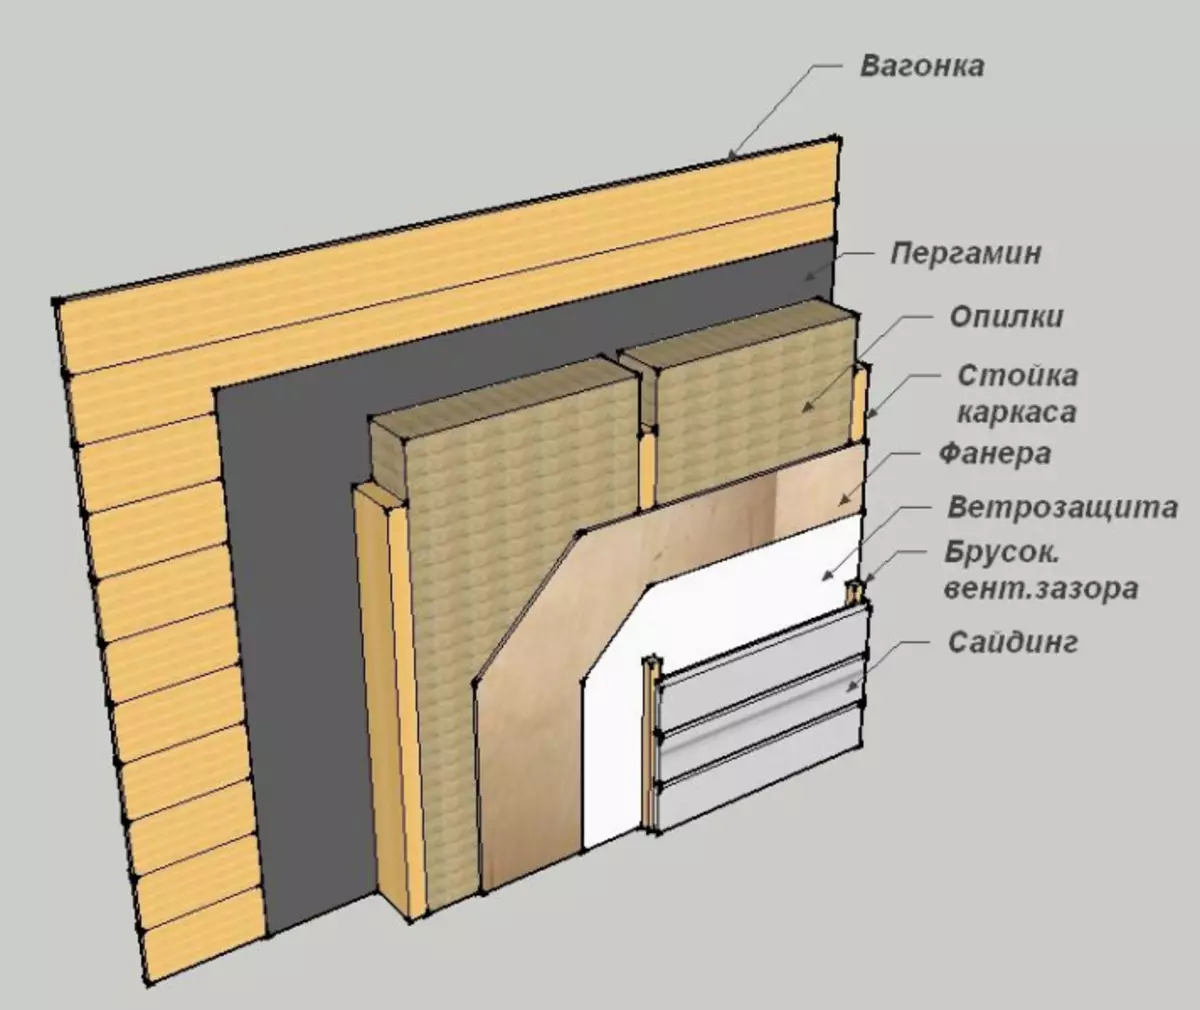 Правильно утеплить стены изнутри. Схема утепления стен изнутри деревянного дома. Схема стен с утеплителем внутри. Схема утепления стен деревянного дома внутри. Схема утепления стен парилки.